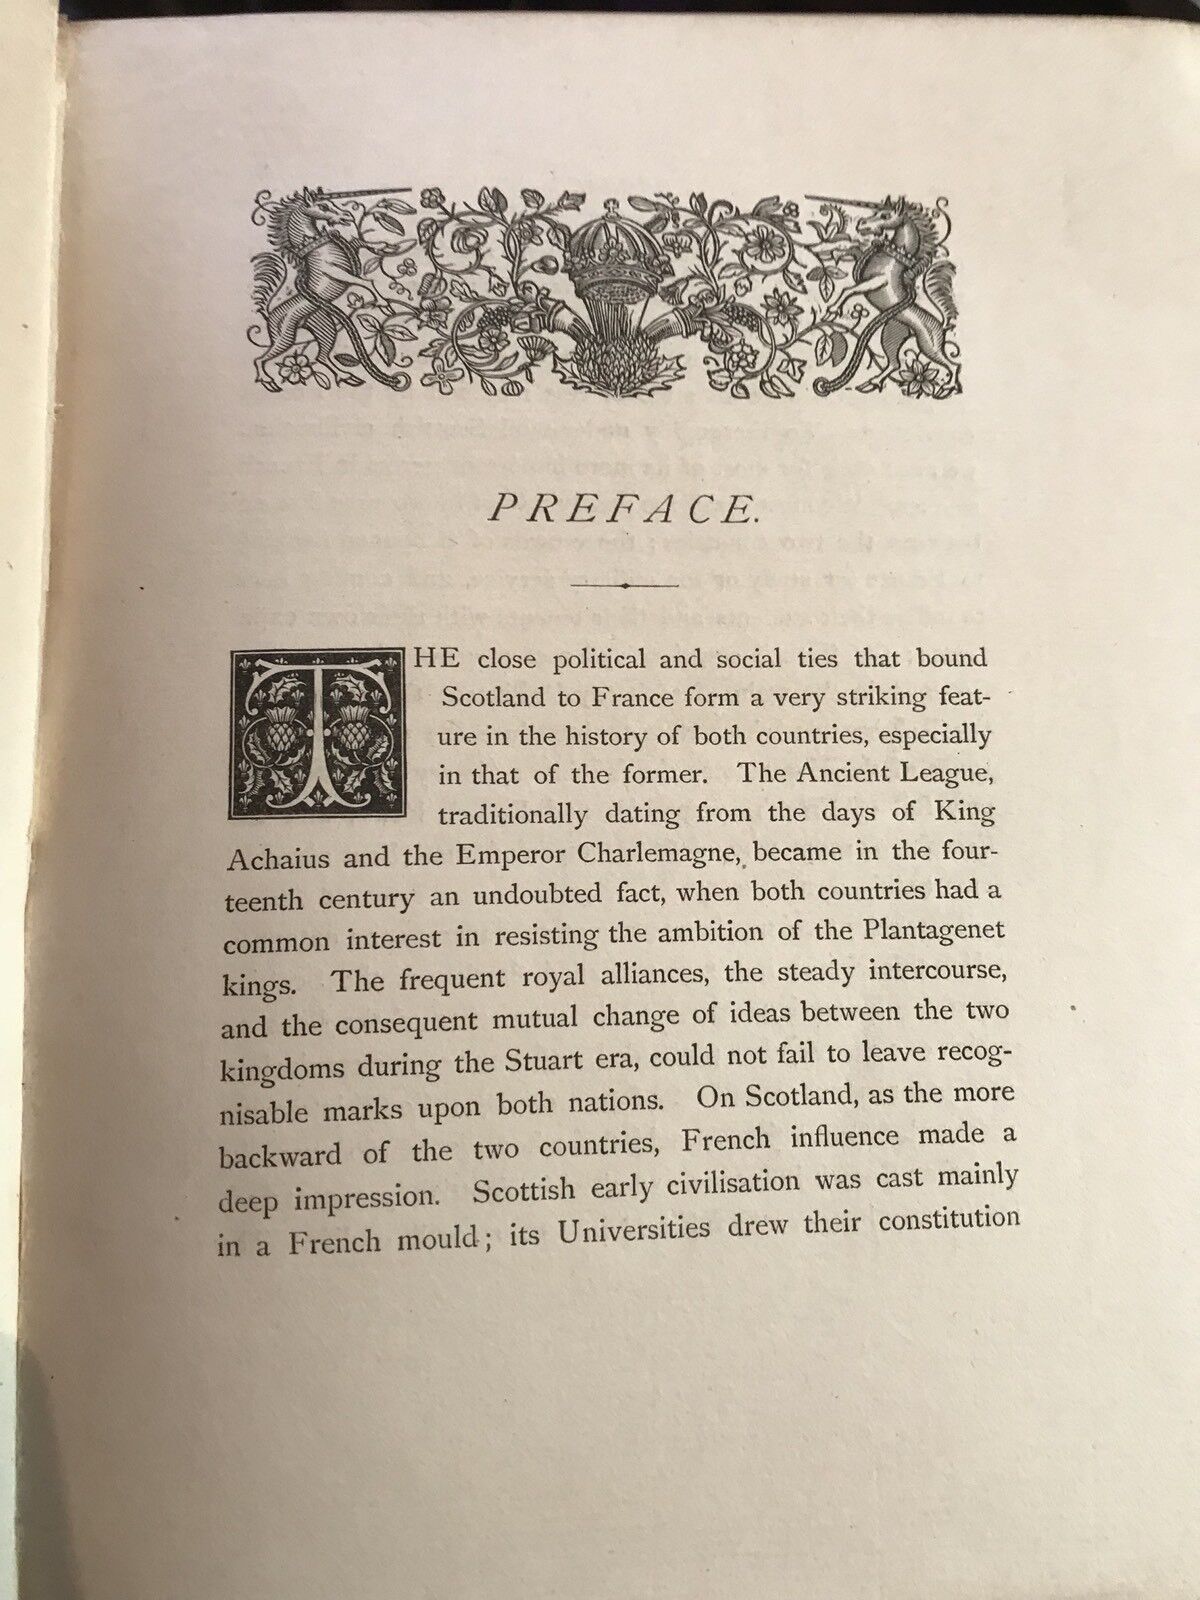 1882 Critical Inquiry into the Scottish Language - Francisque-Michel - Scotland